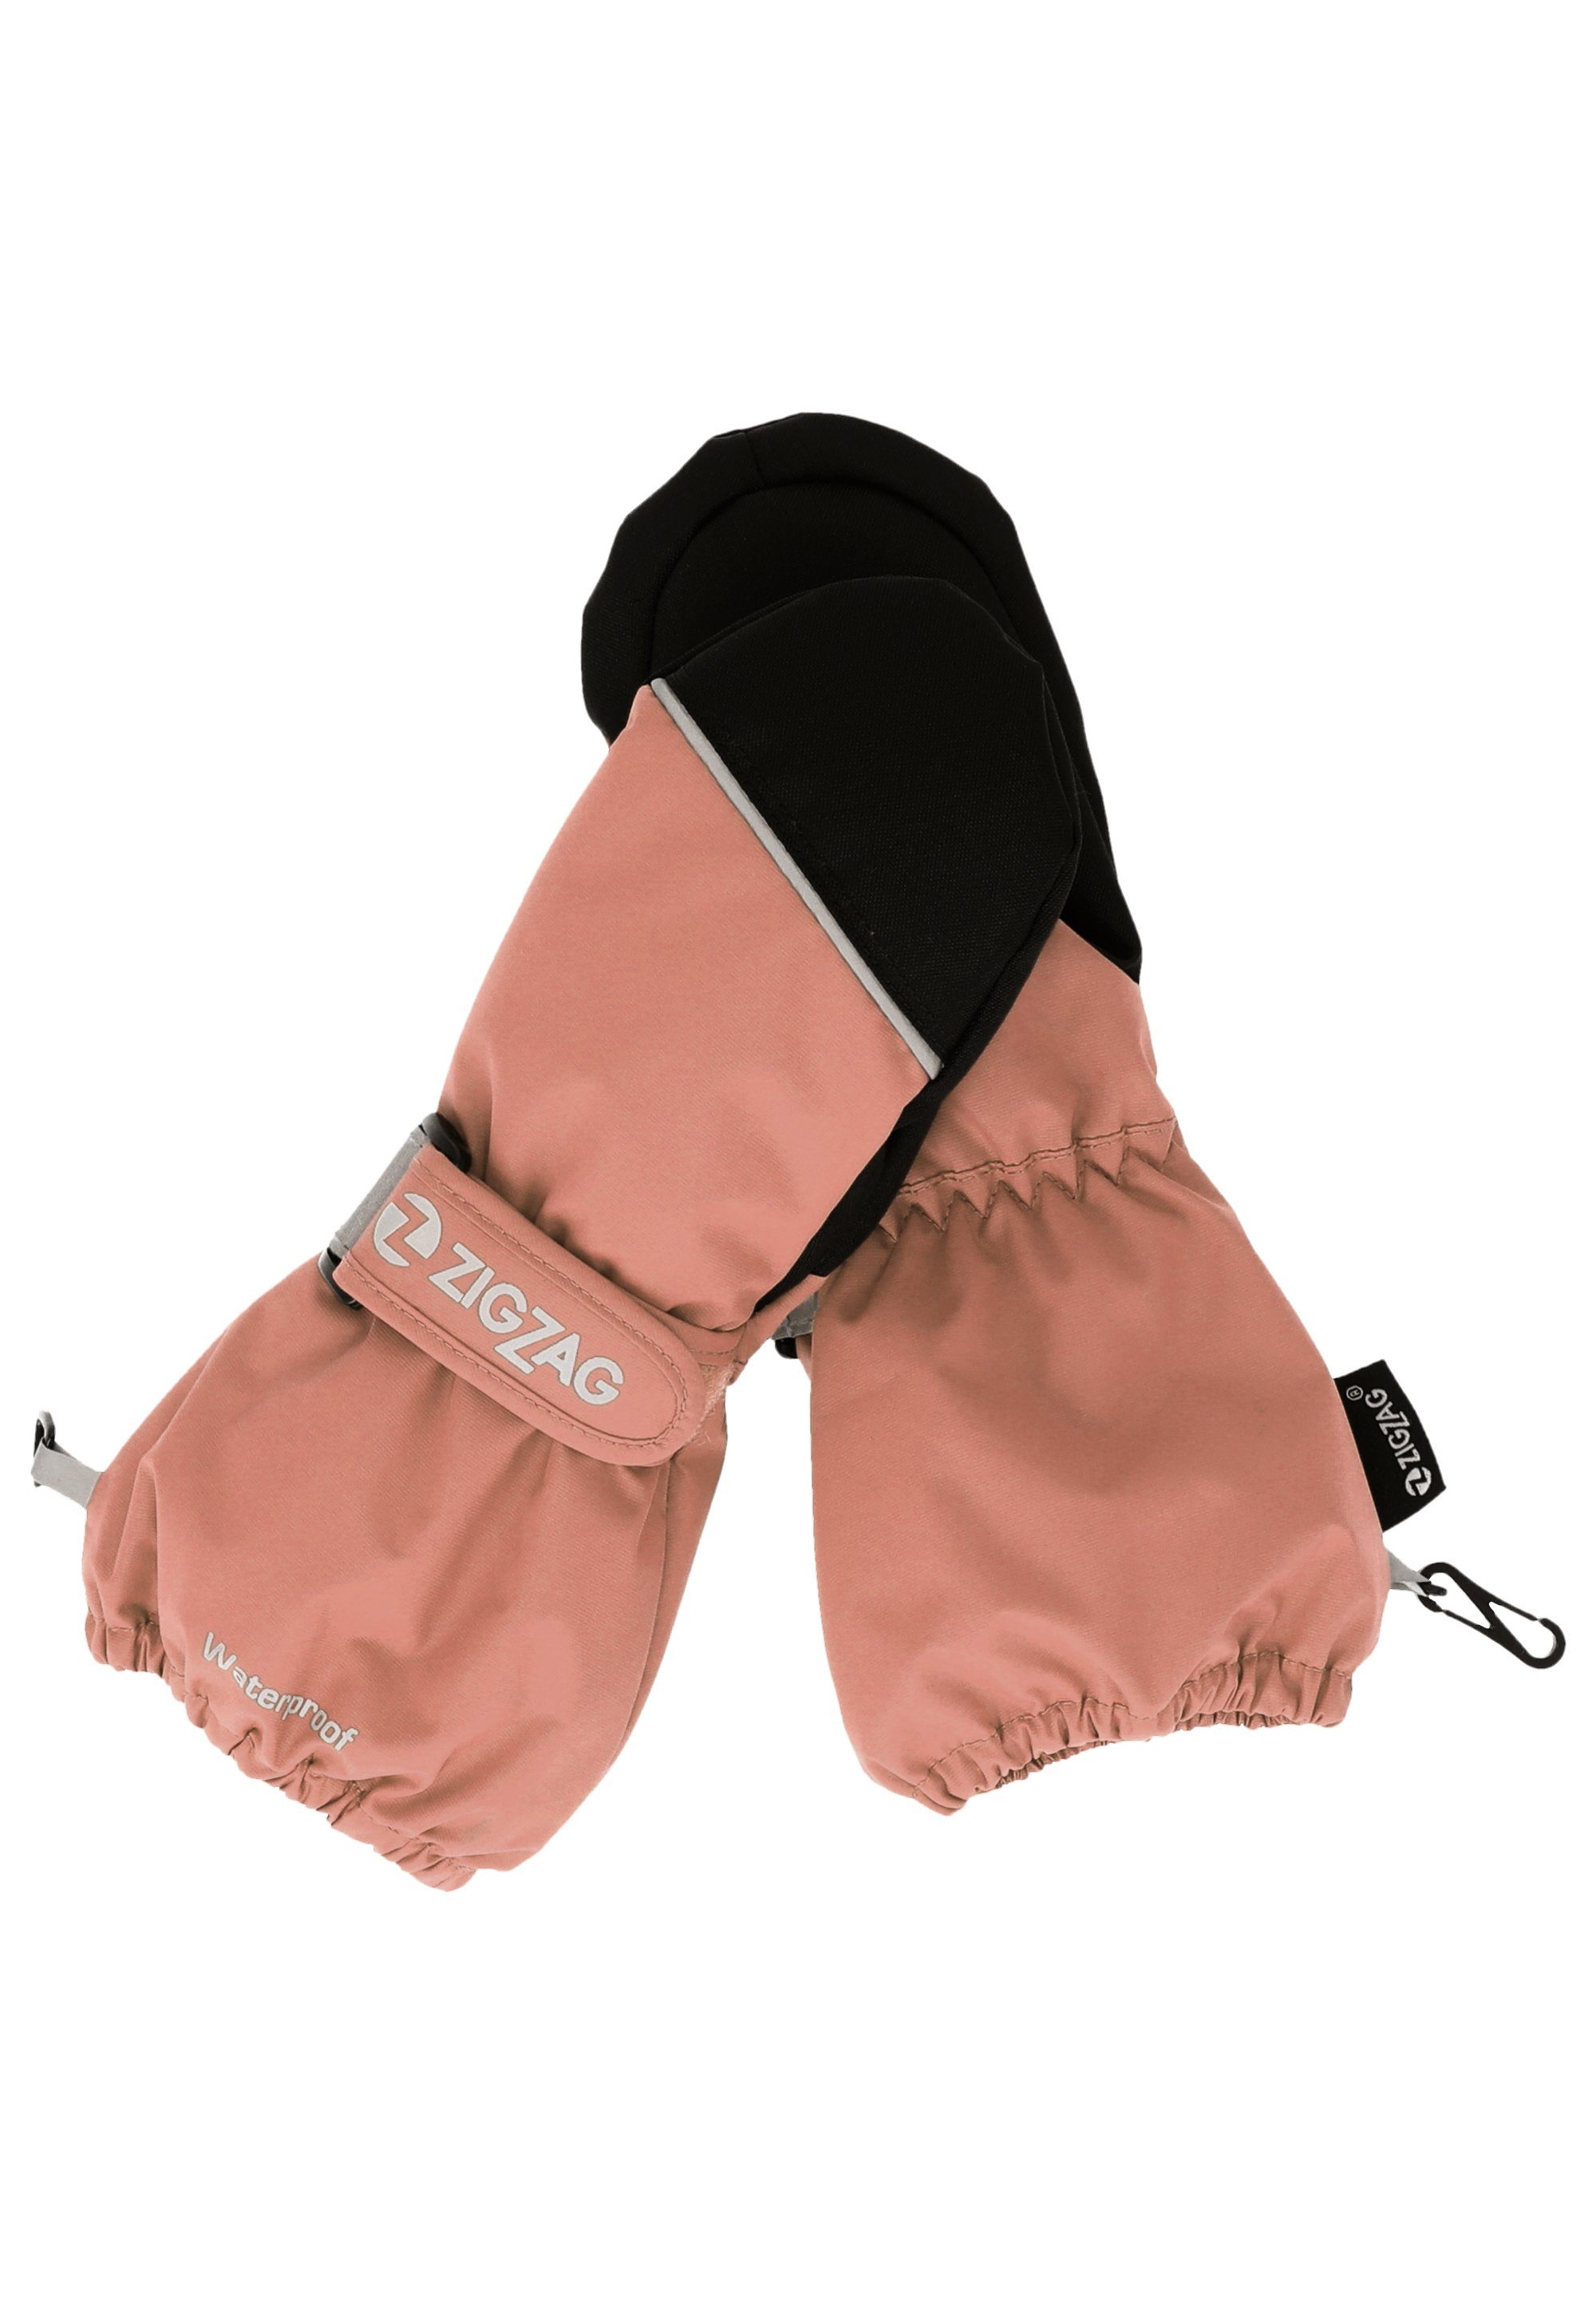 rosa Wintersport-Ausstattung mit Kempston komfortabler Skihandschuhe ZIGZAG